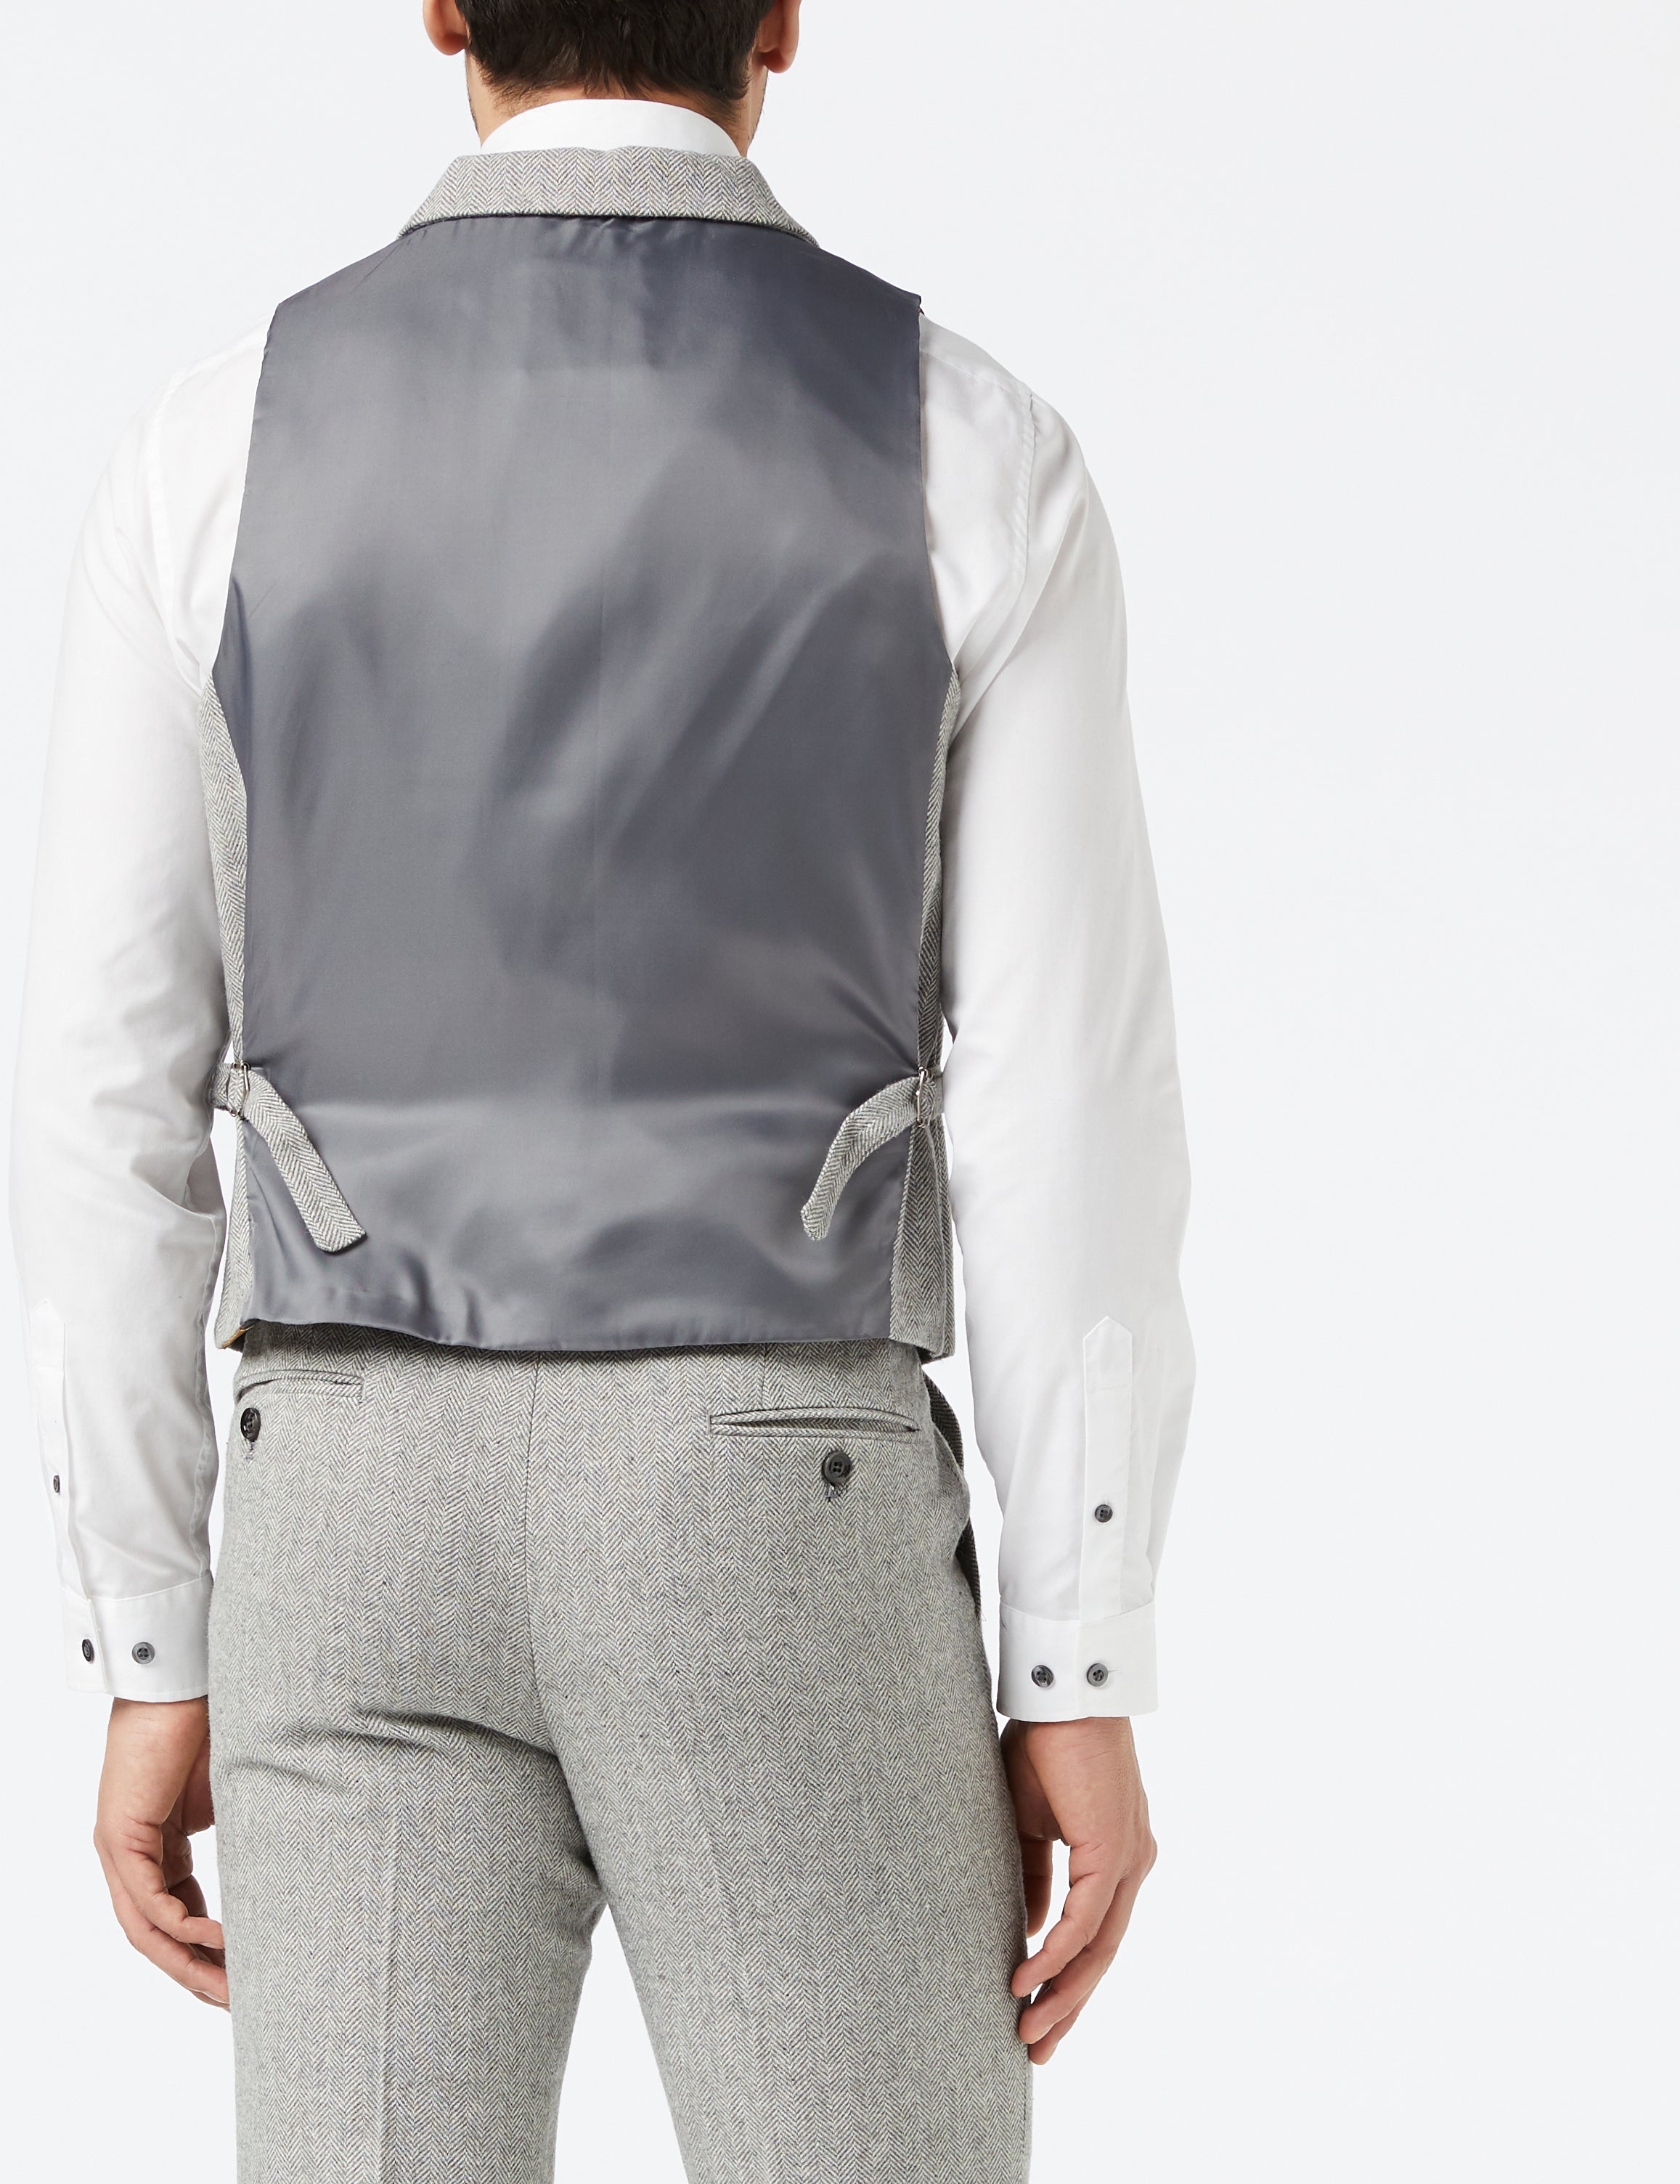 Martin - Grey Tweed Collar Double Breasted waistcoat